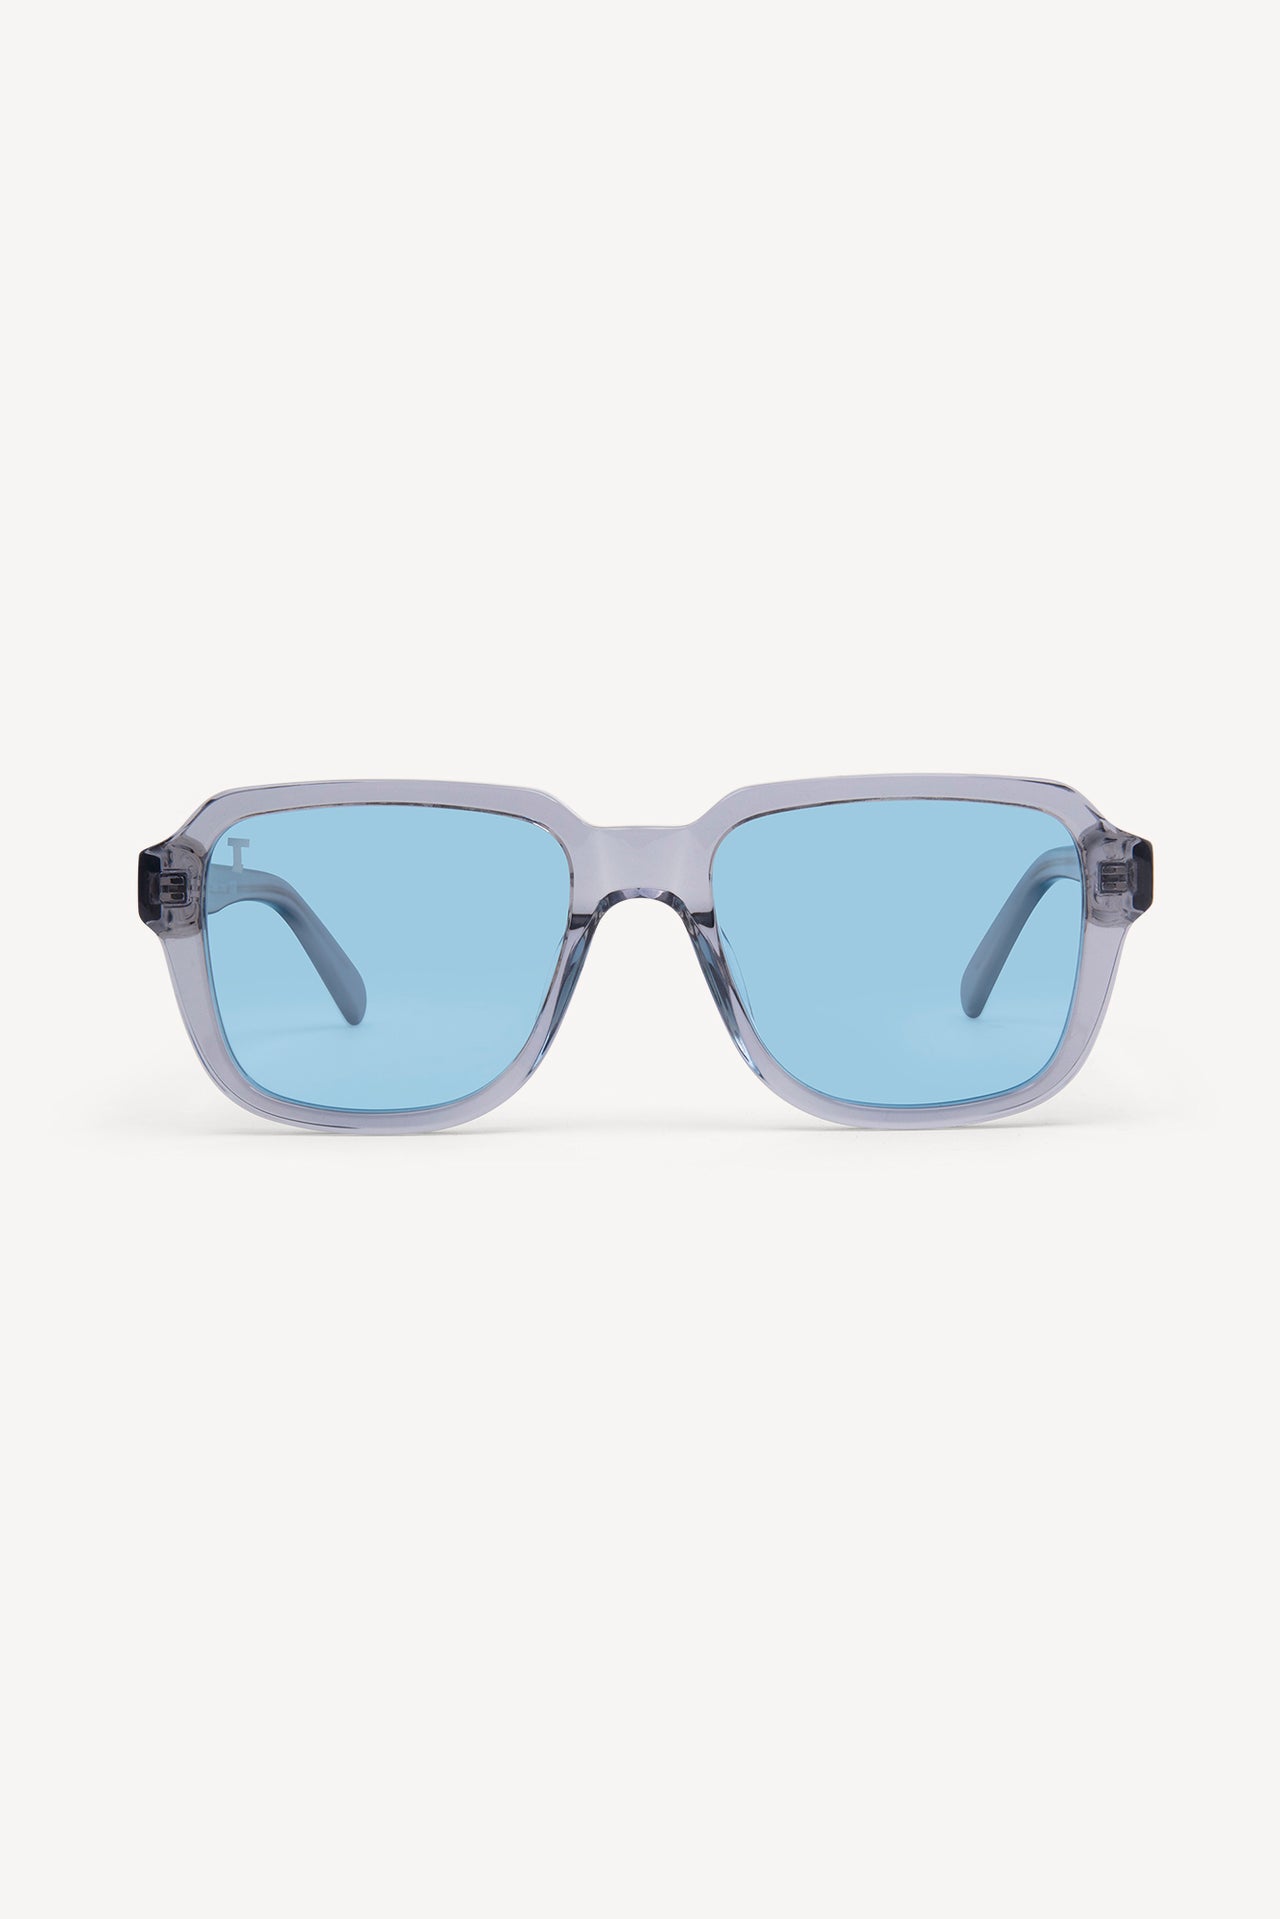 TOATIE Casablanca Square Sunglasses GREY/BLUE